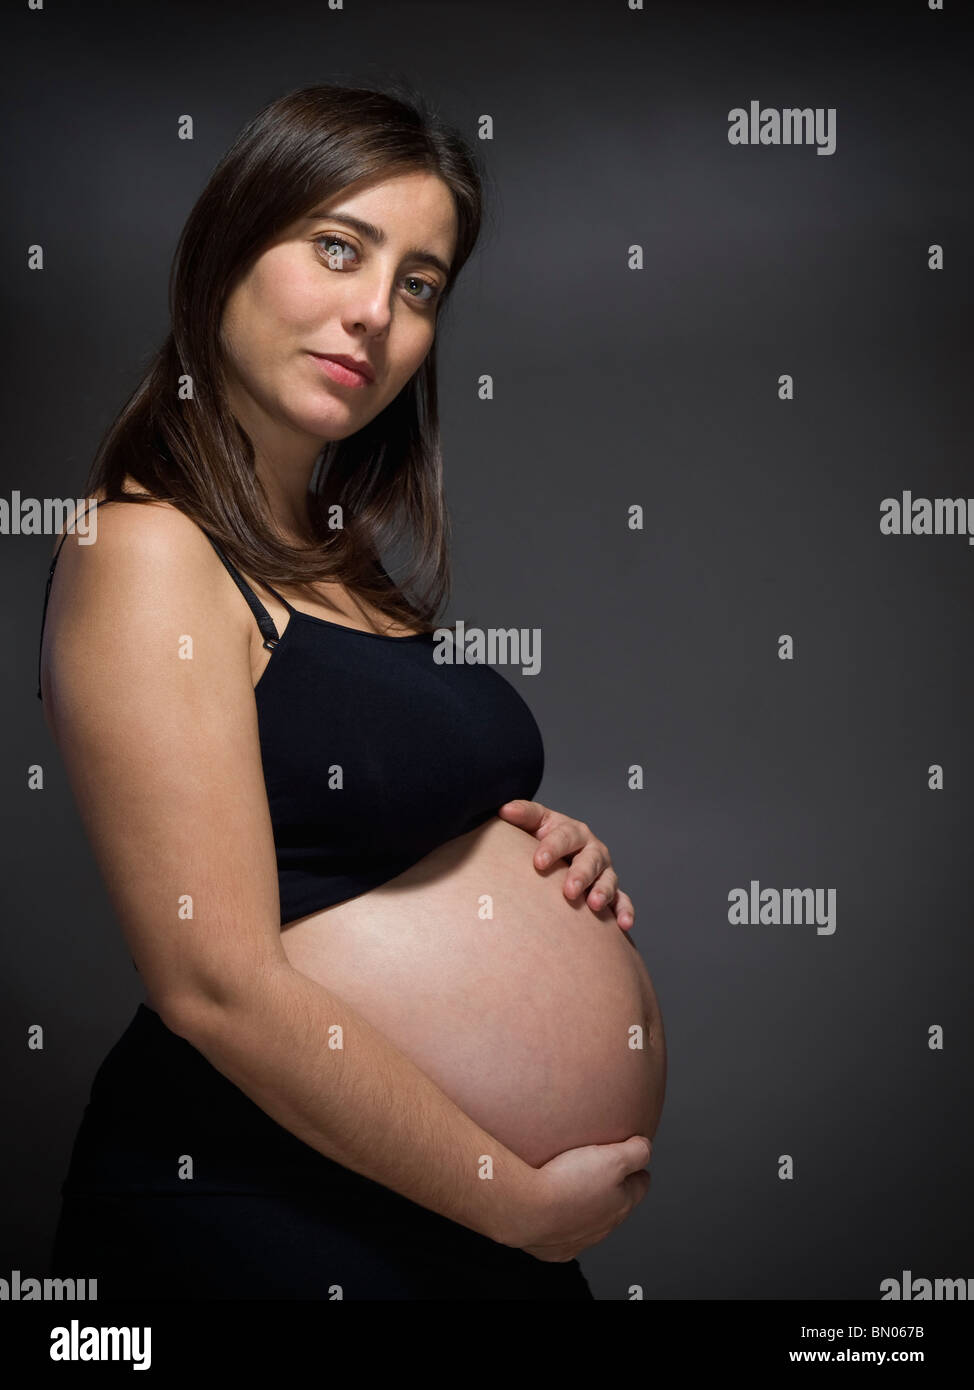 Dicker bauch frau nicht schwanger